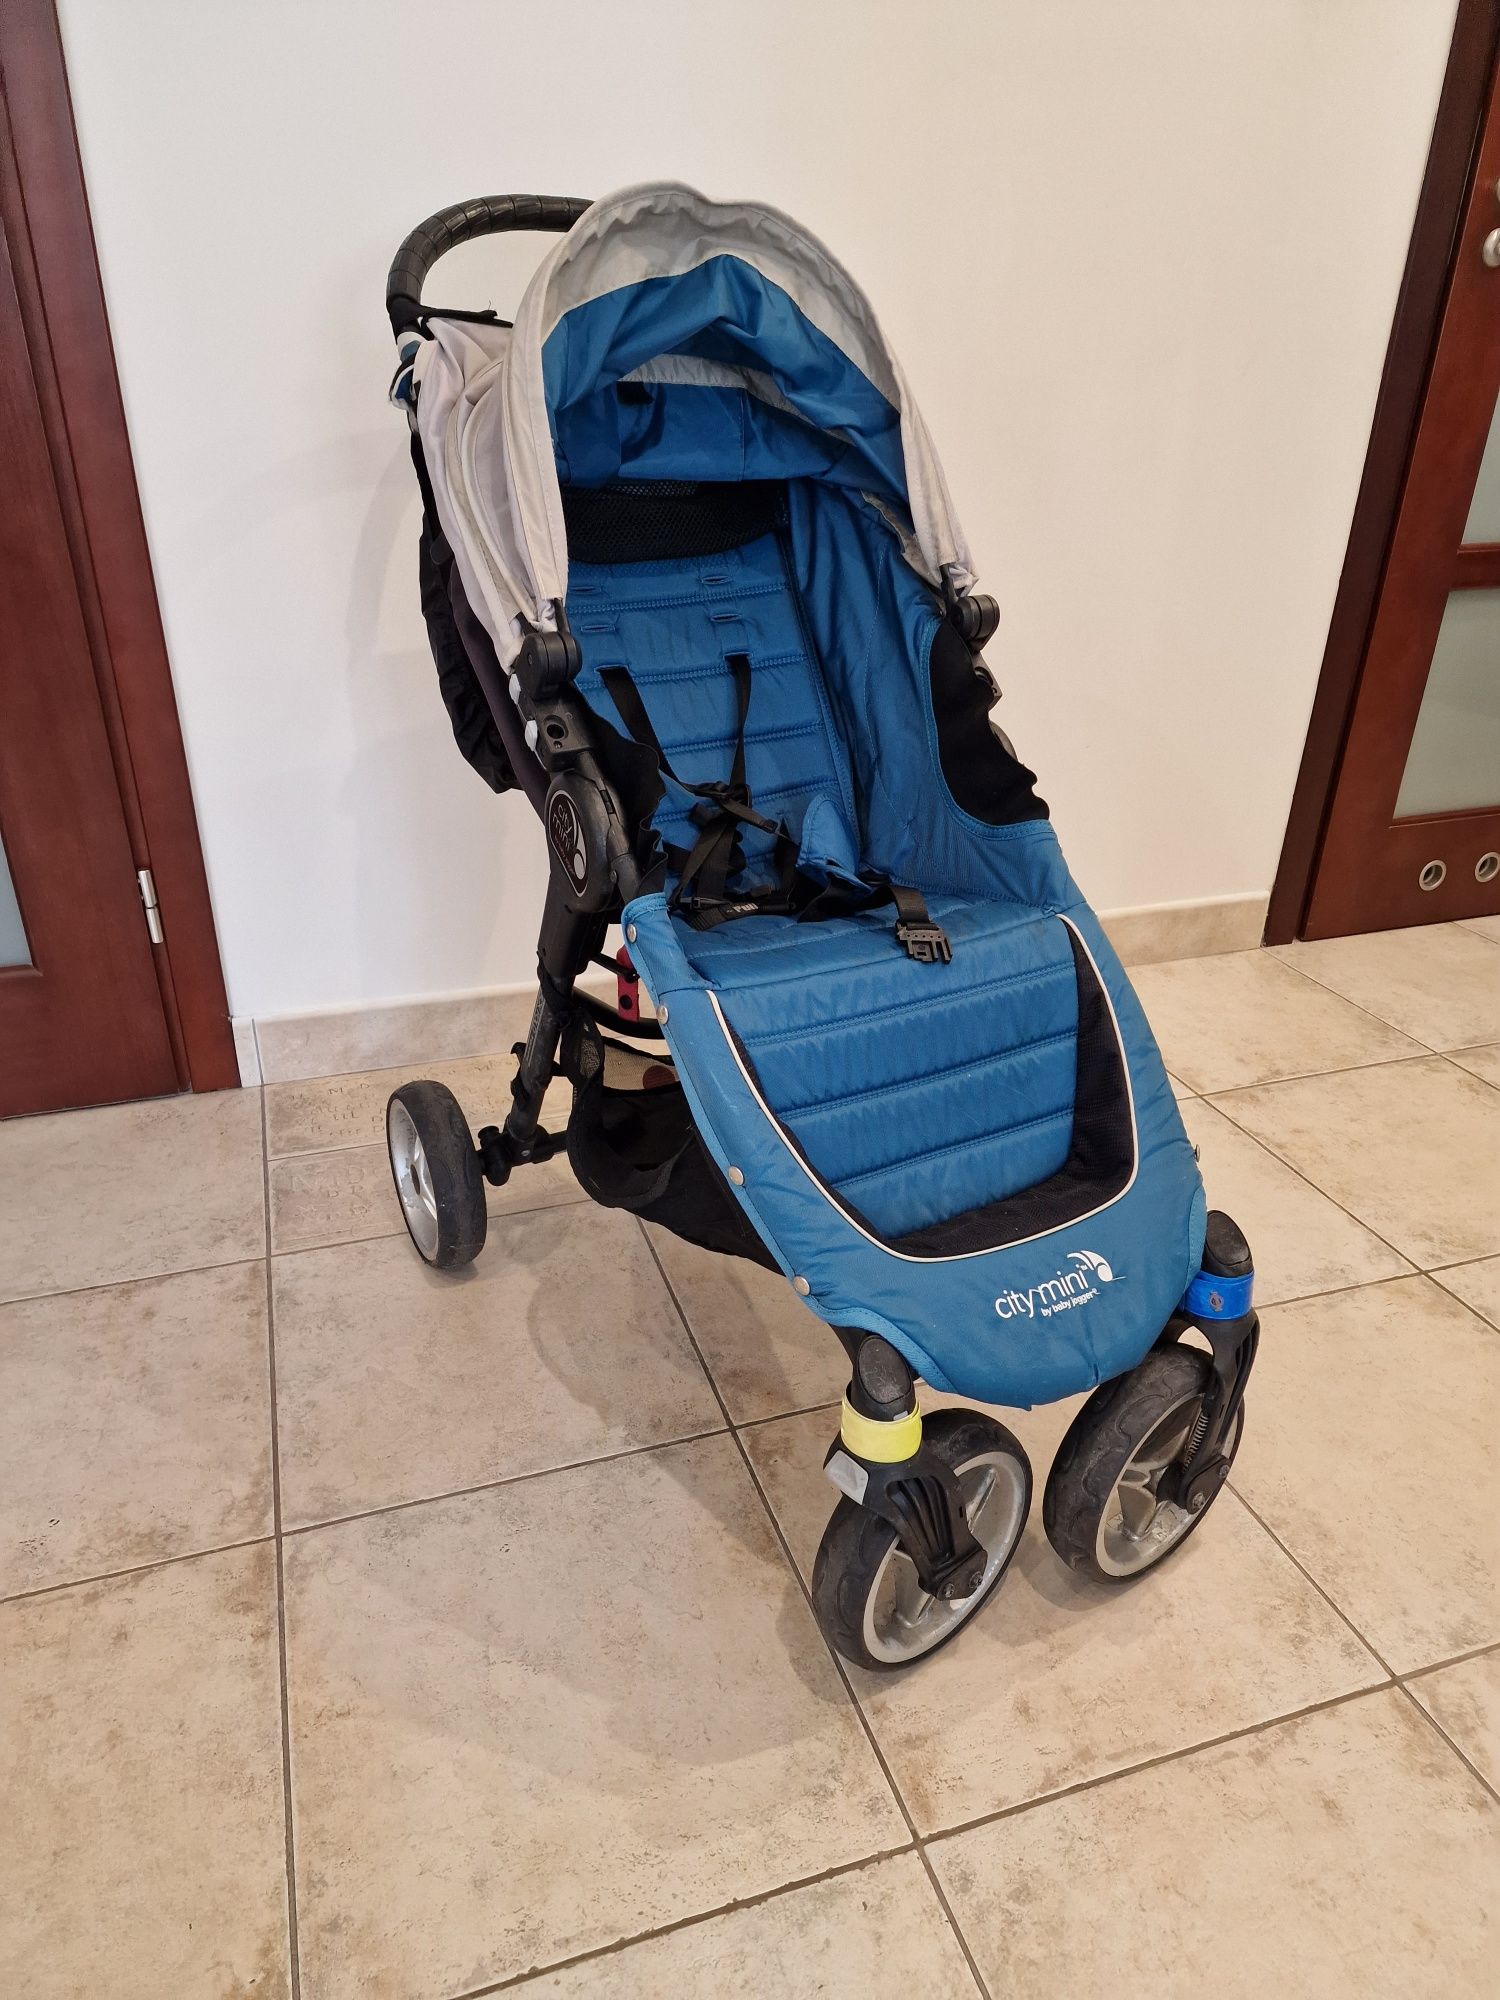 Wózek Baby Jogger City Mini